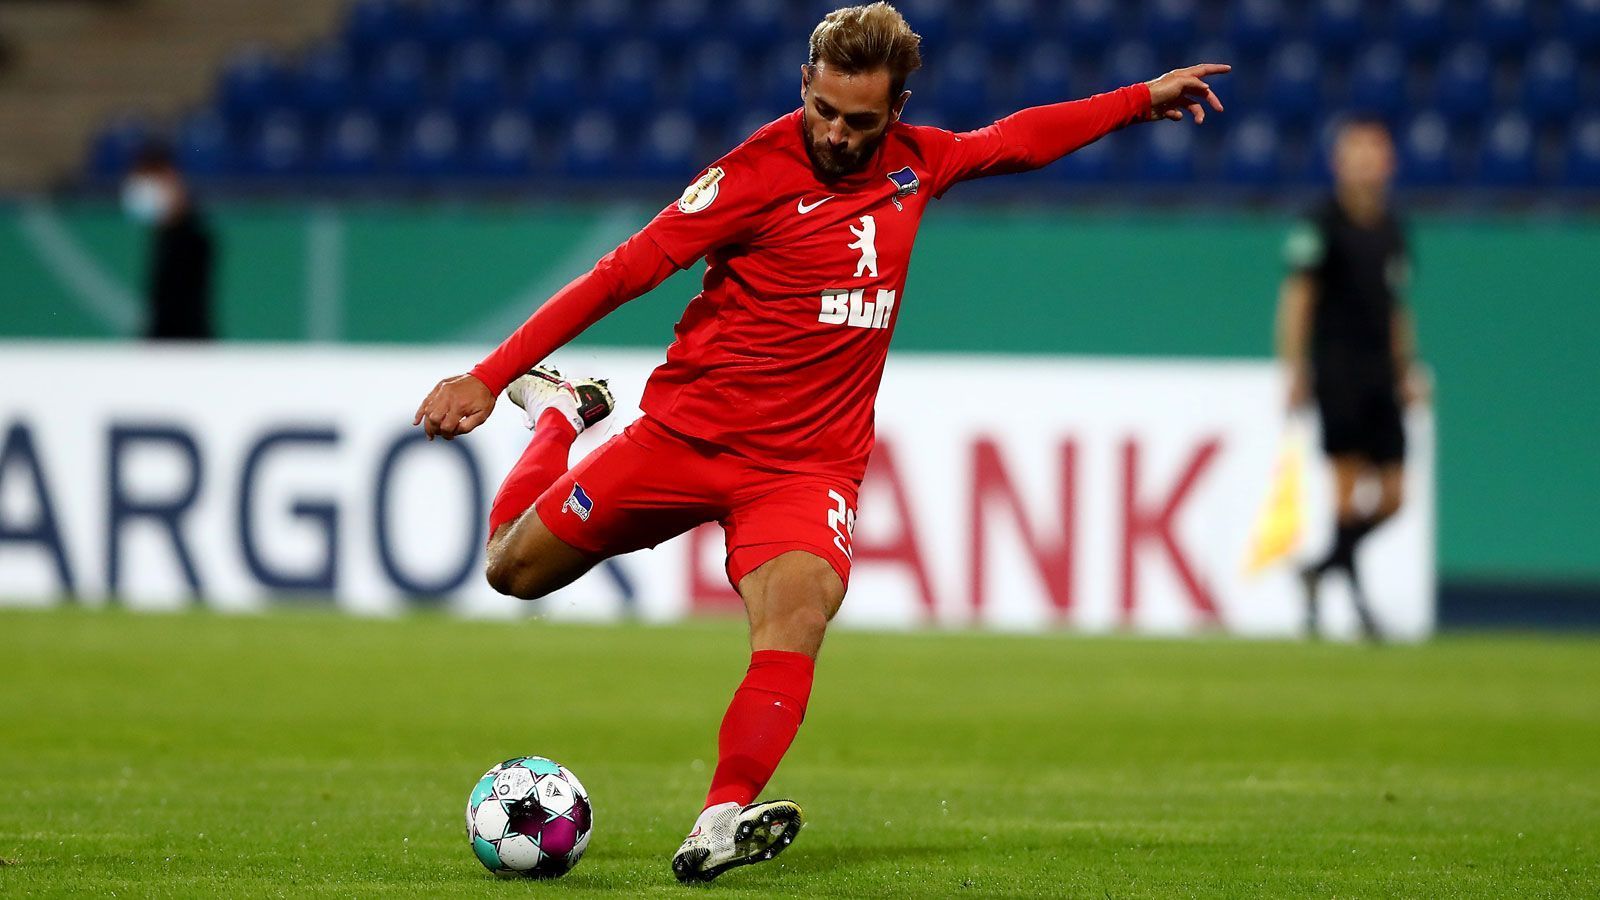 
                <strong>Platz 12: Lucas Tousart</strong><br>
                 - Verein: Hertha BSC Berlin - Marktwertsprung: + 4 Millionen Euro - Marktwert: 20 Millionen Euro
              